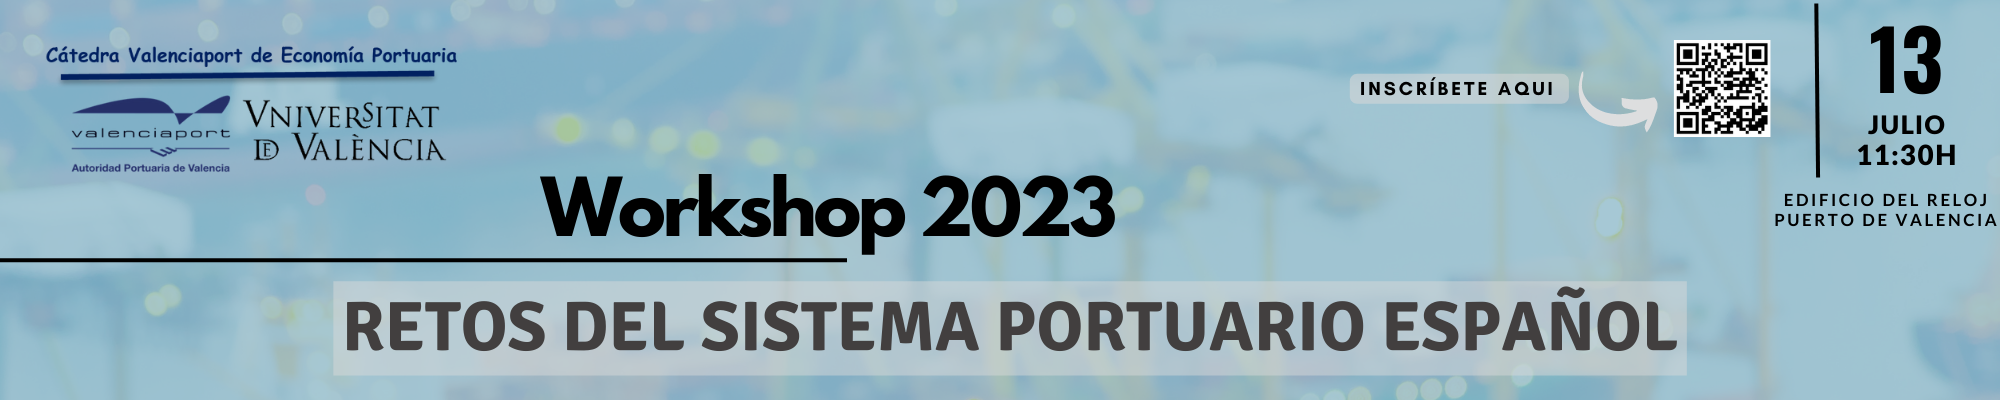 Enlace a Workshop 2023: Retos del sistema portuario español. Información e inscricpión. 